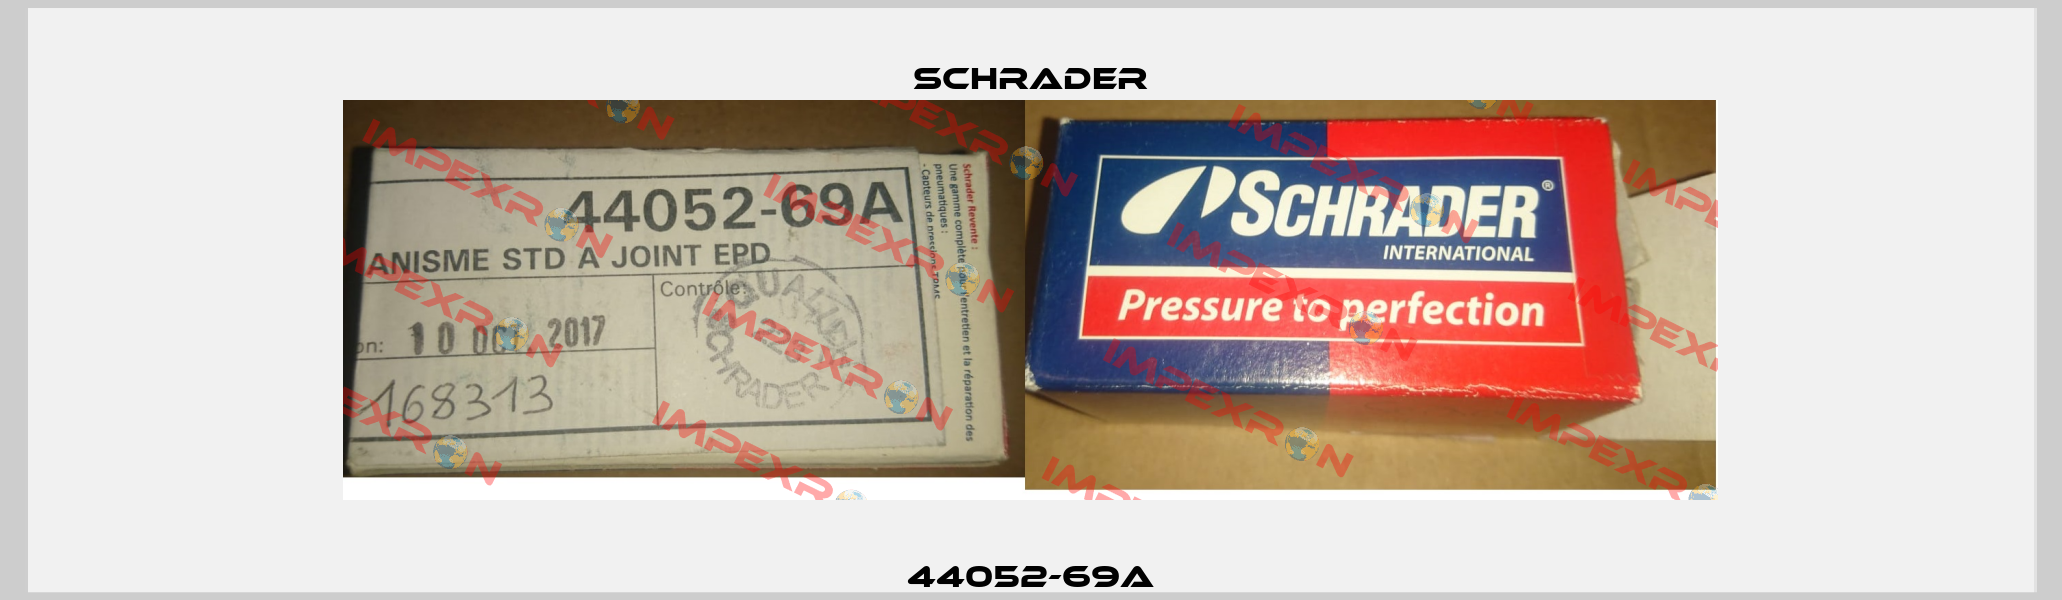 44052-69A Schrader